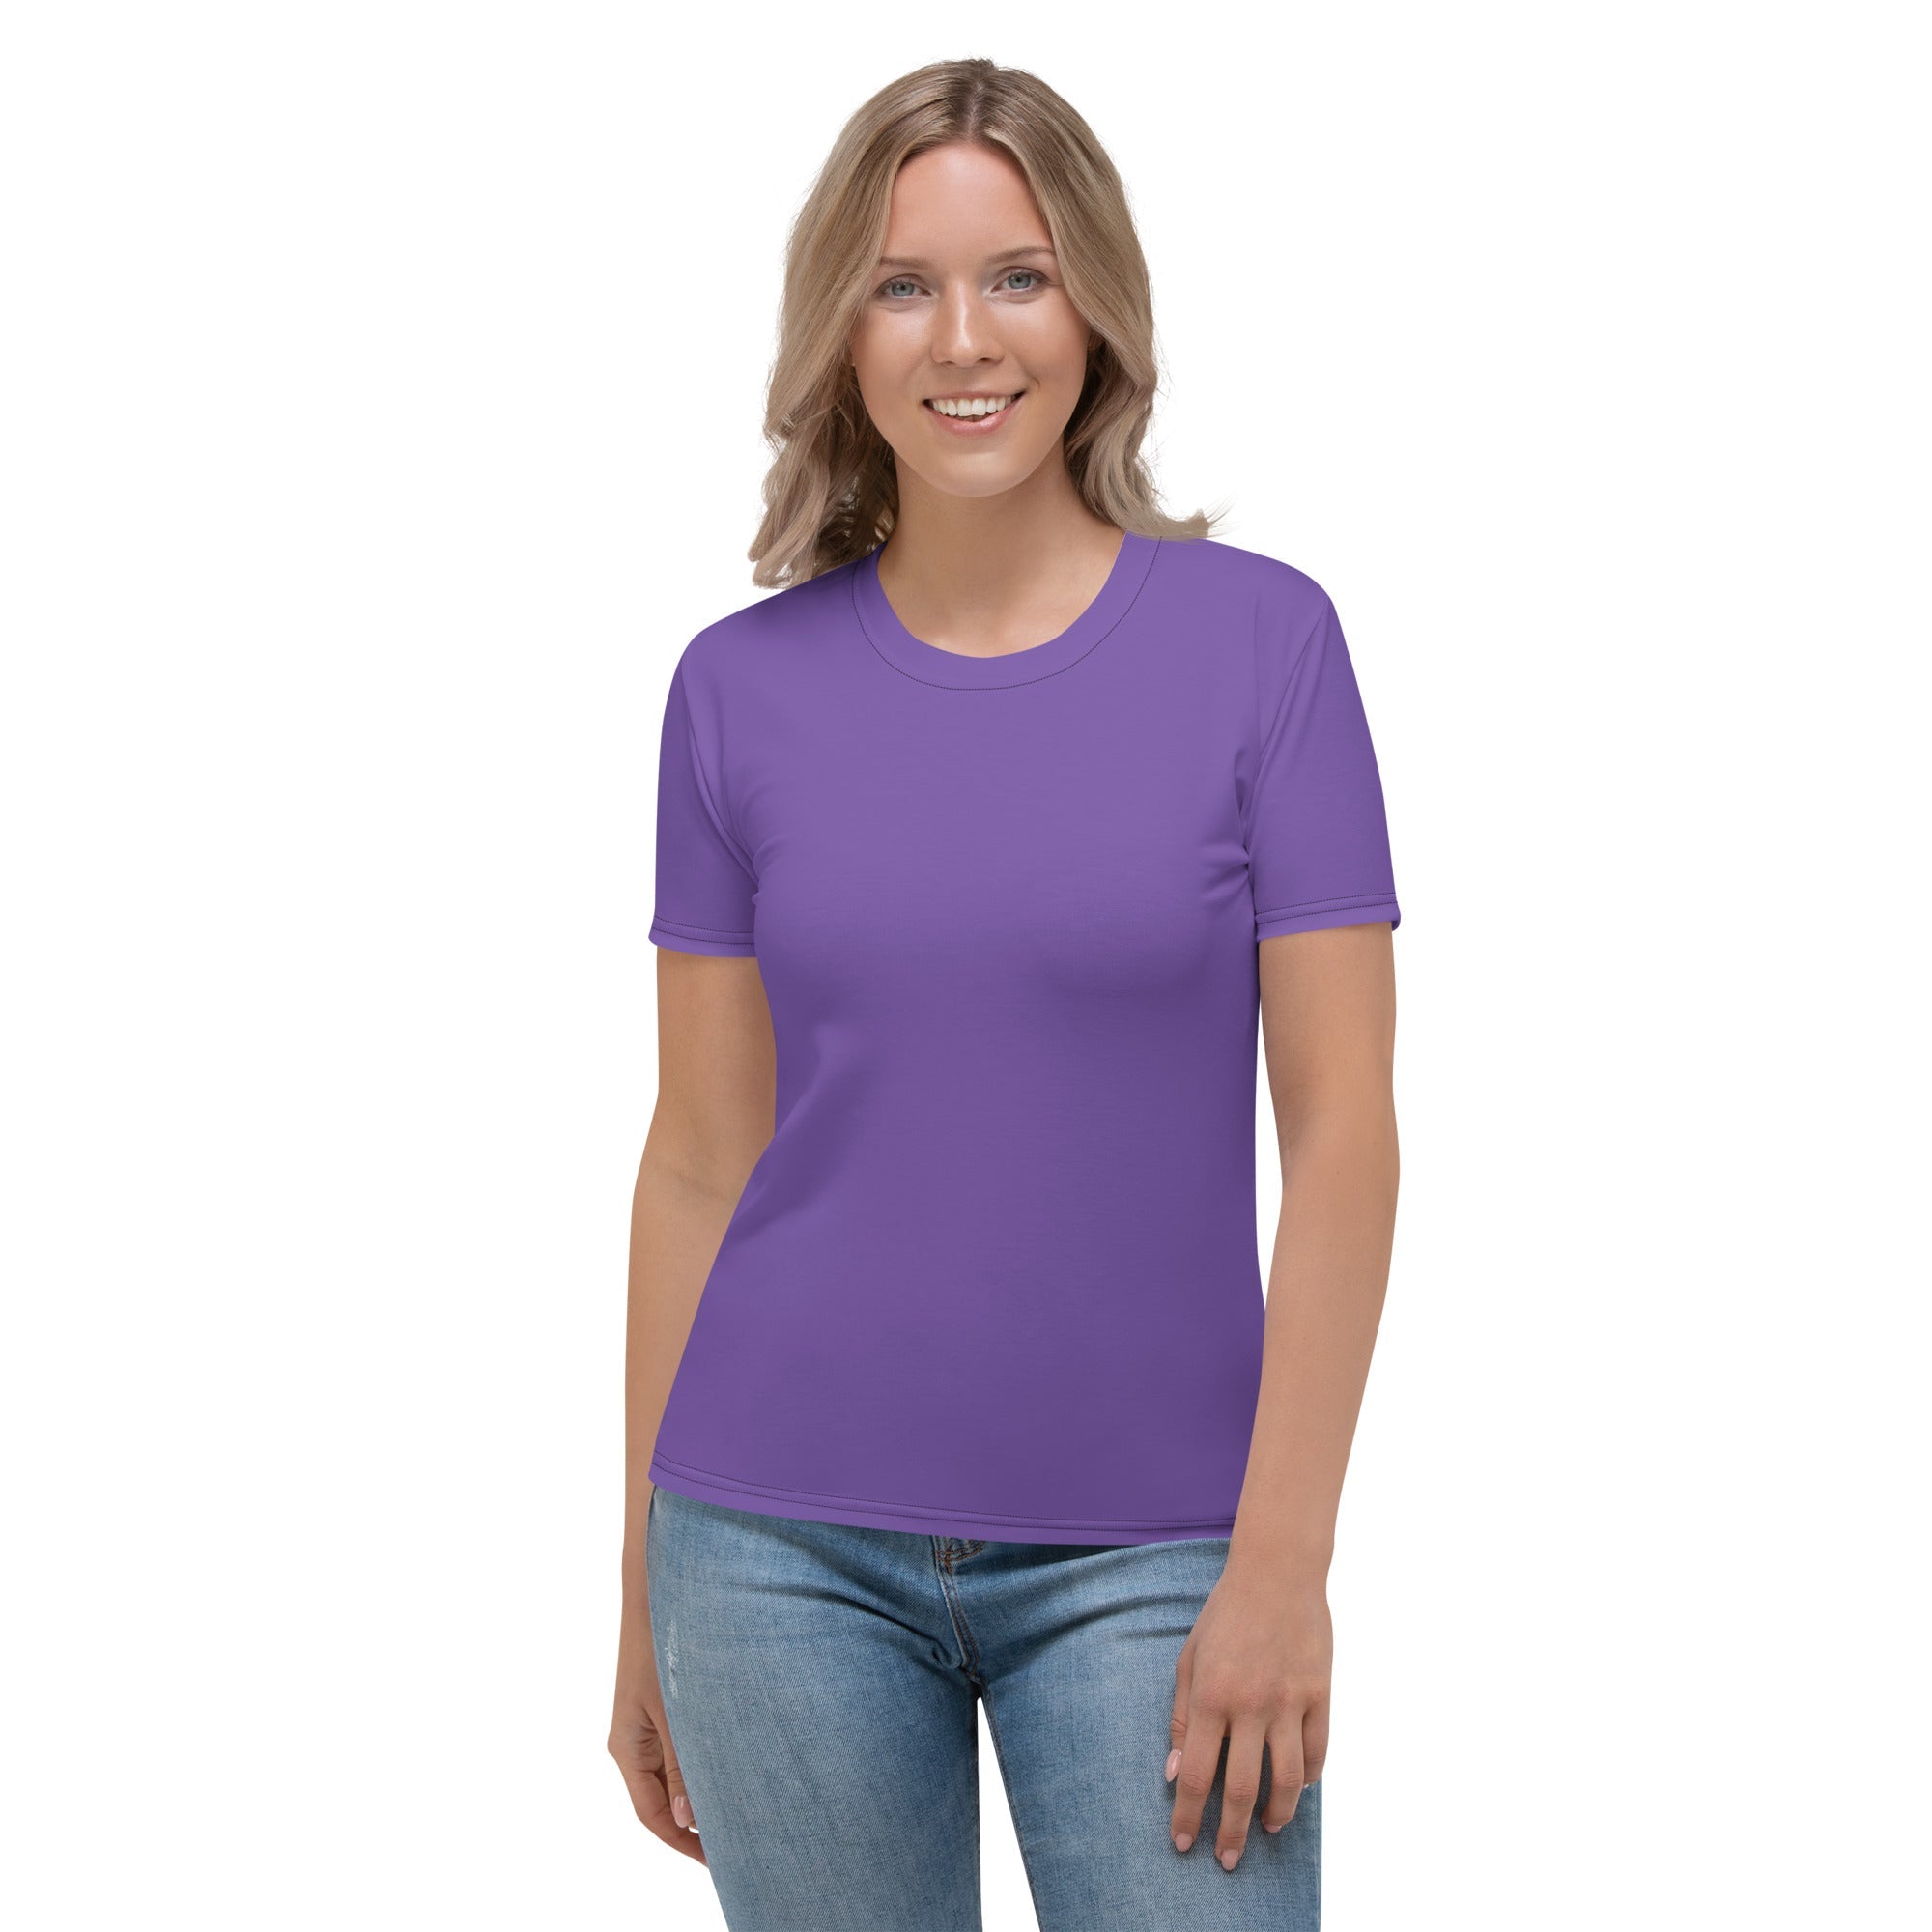 Fierce Purple T-shirt